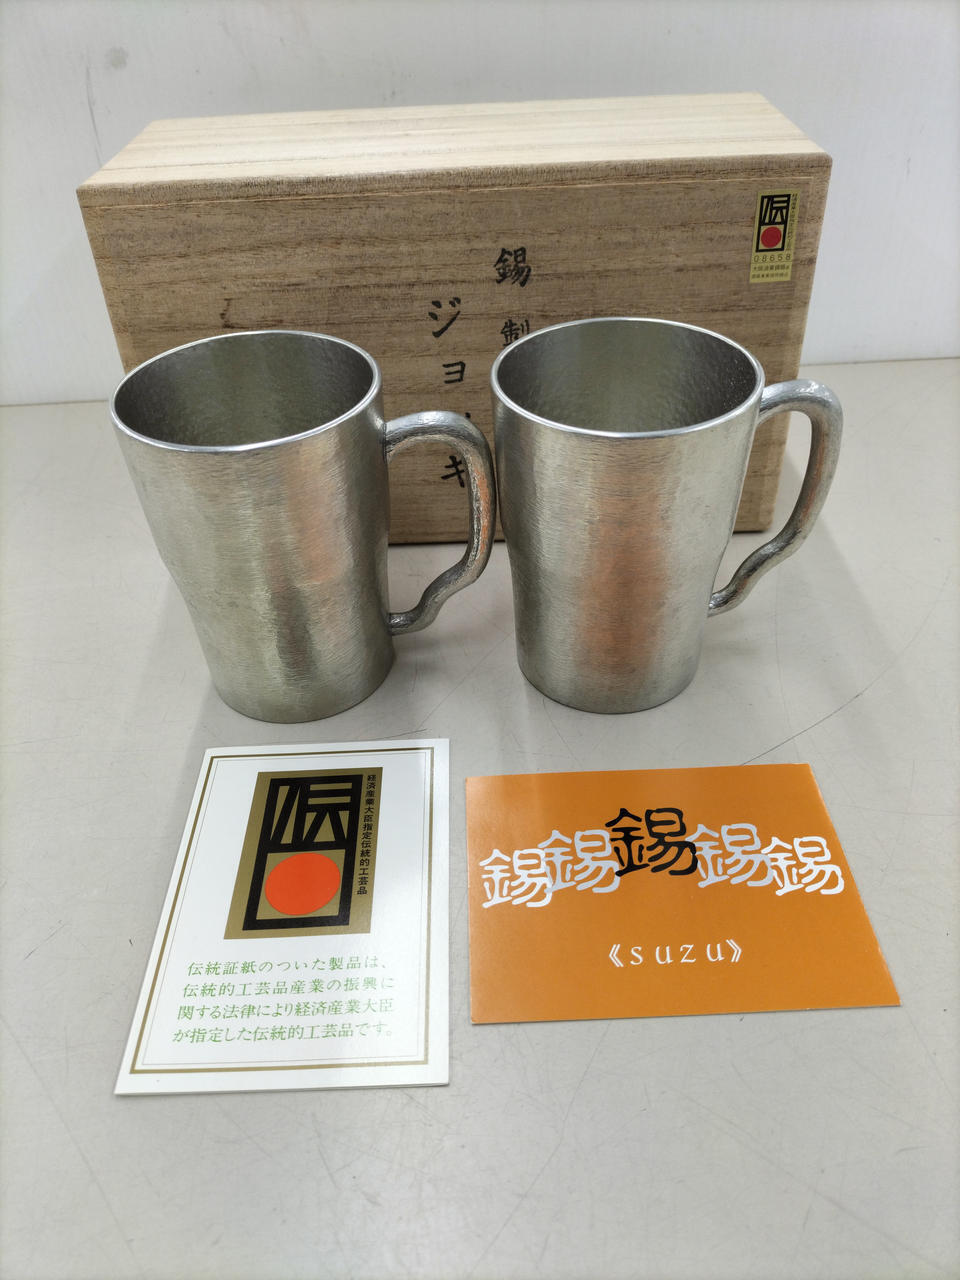 Sake vessel Osaka Naniwa Tinware Tin Pair Mug from Japan